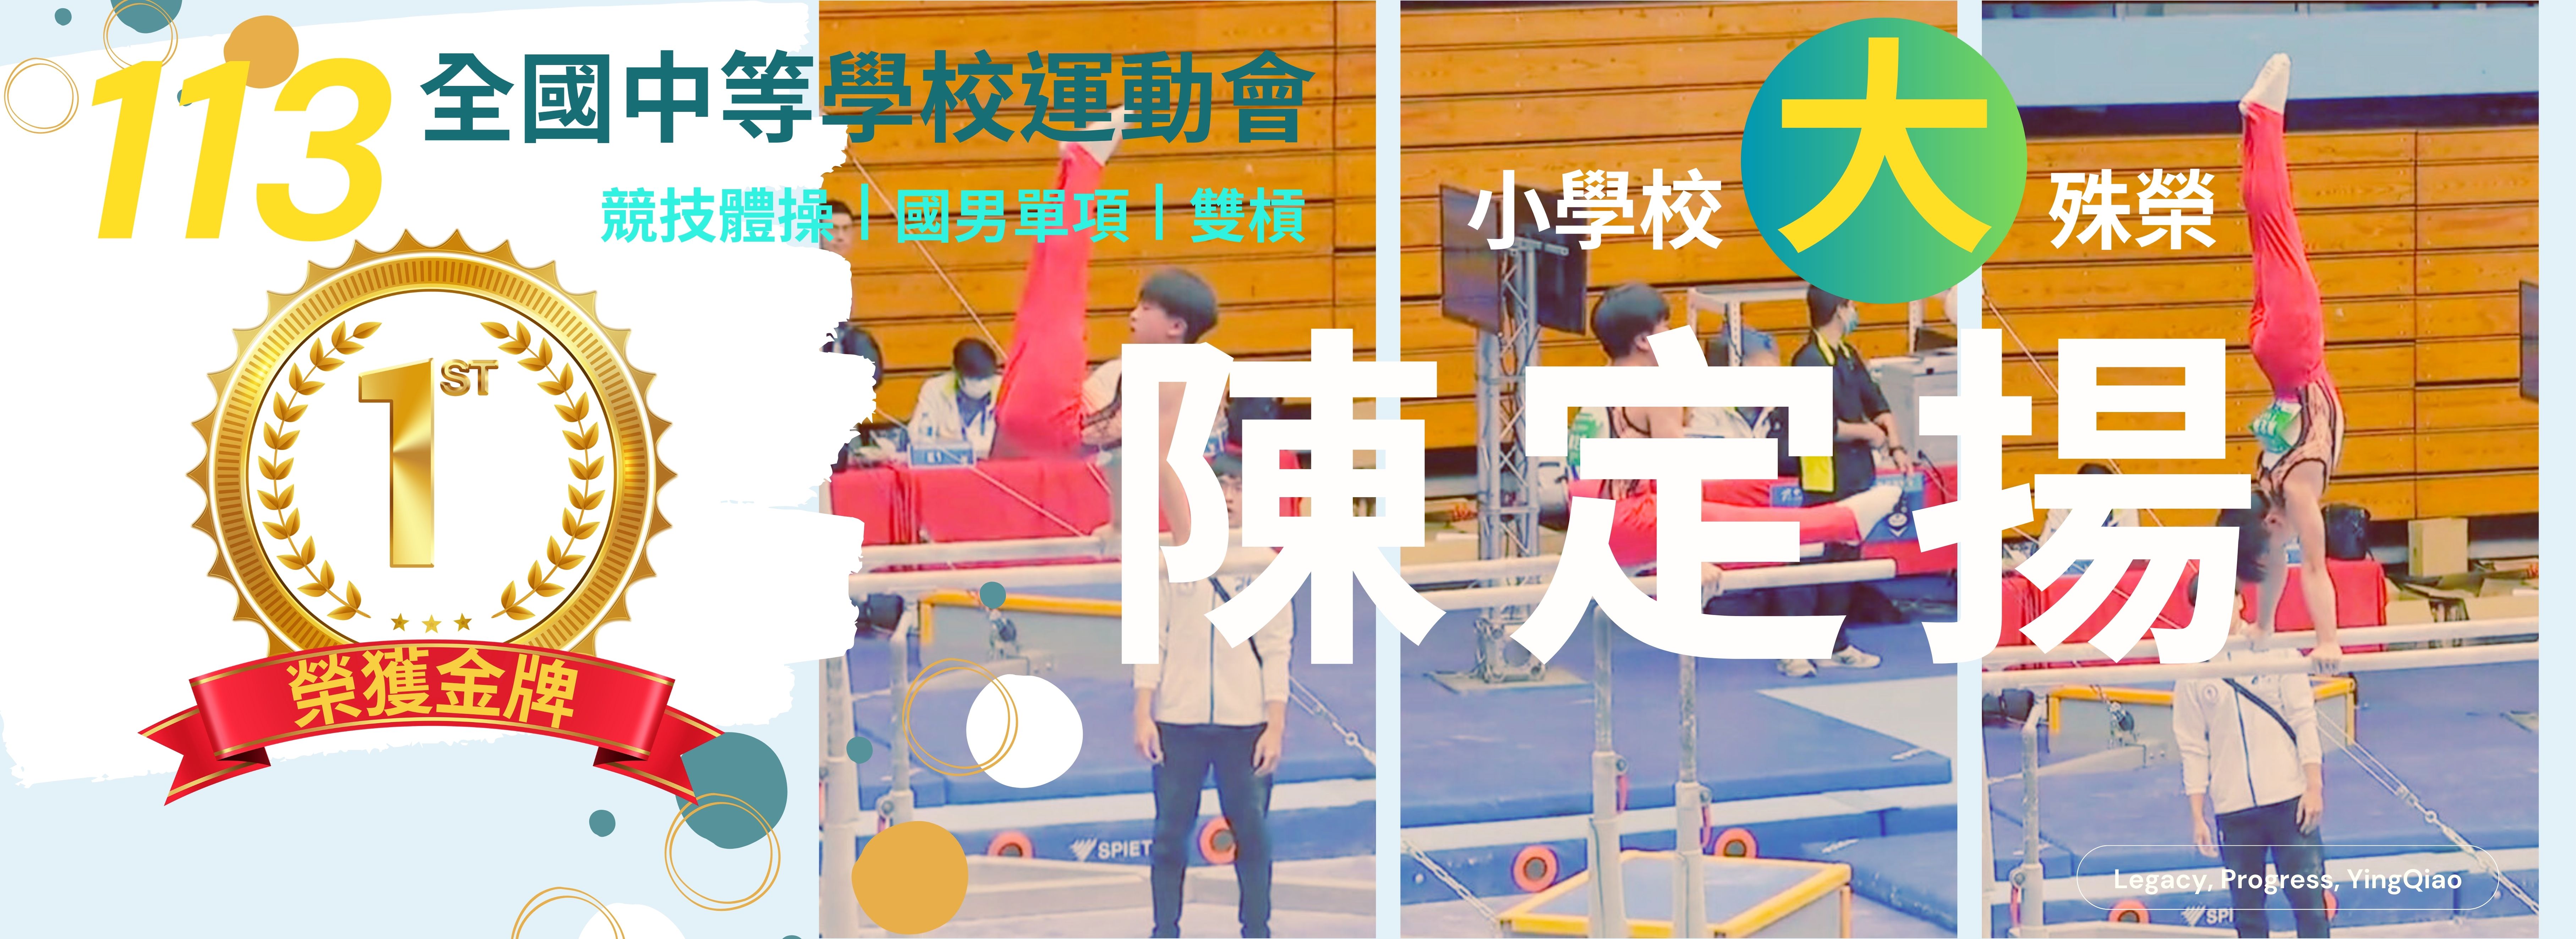 陳定揚榮獲113年全國中等學校運動會競技體操國男單項雙槓冠軍